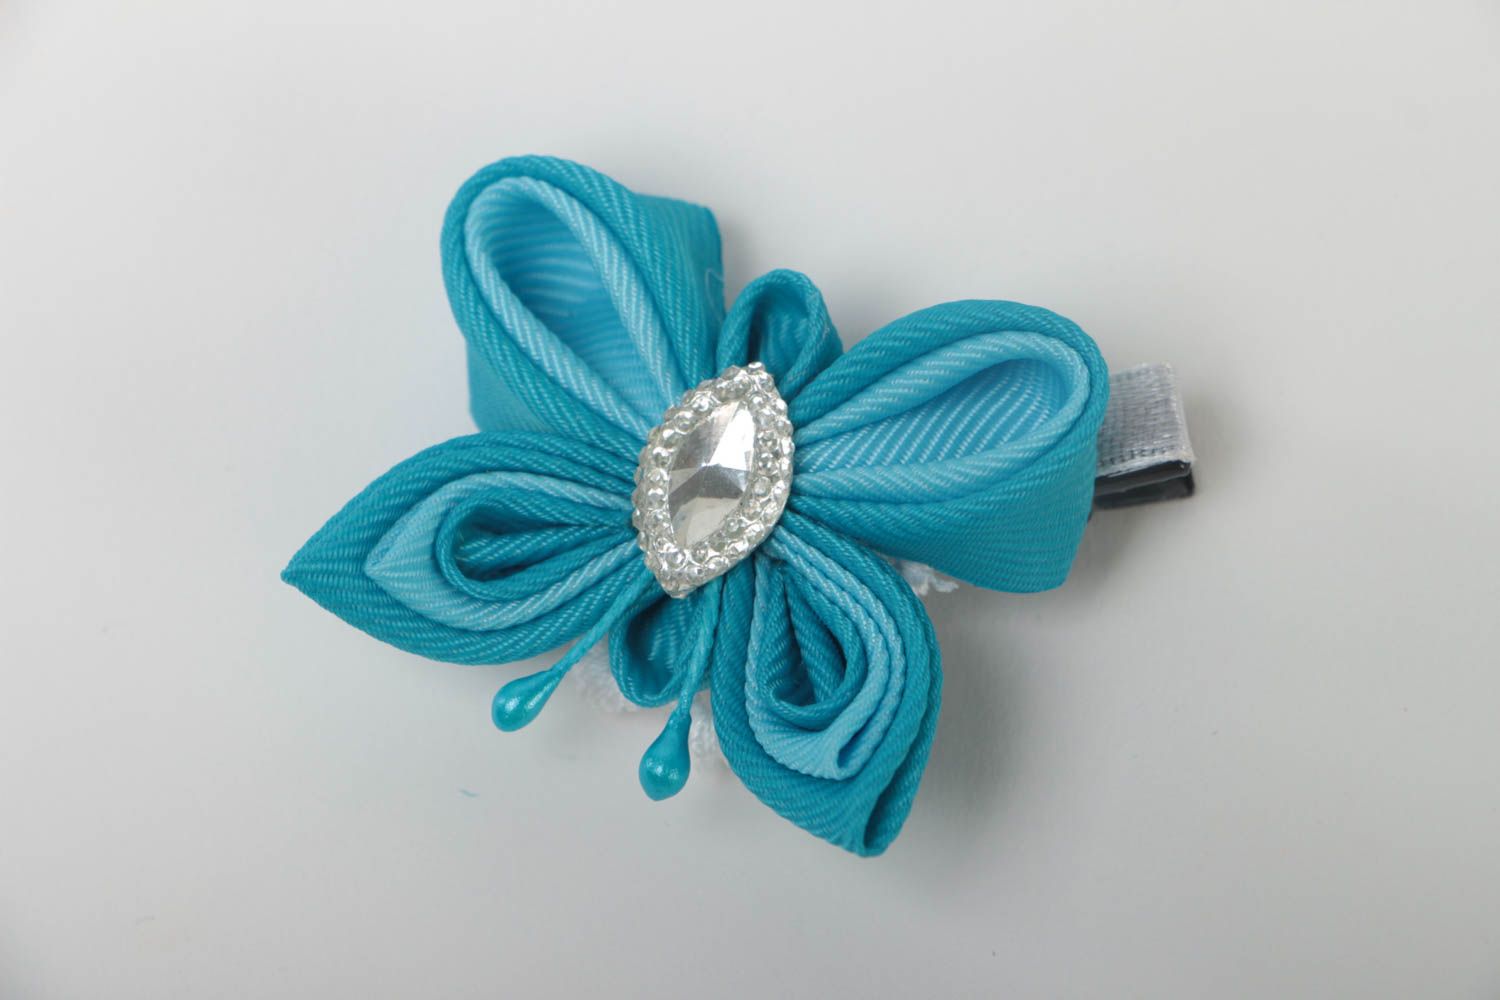 Small handmade hair clip designer textile barrette hair accessories designs photo 2